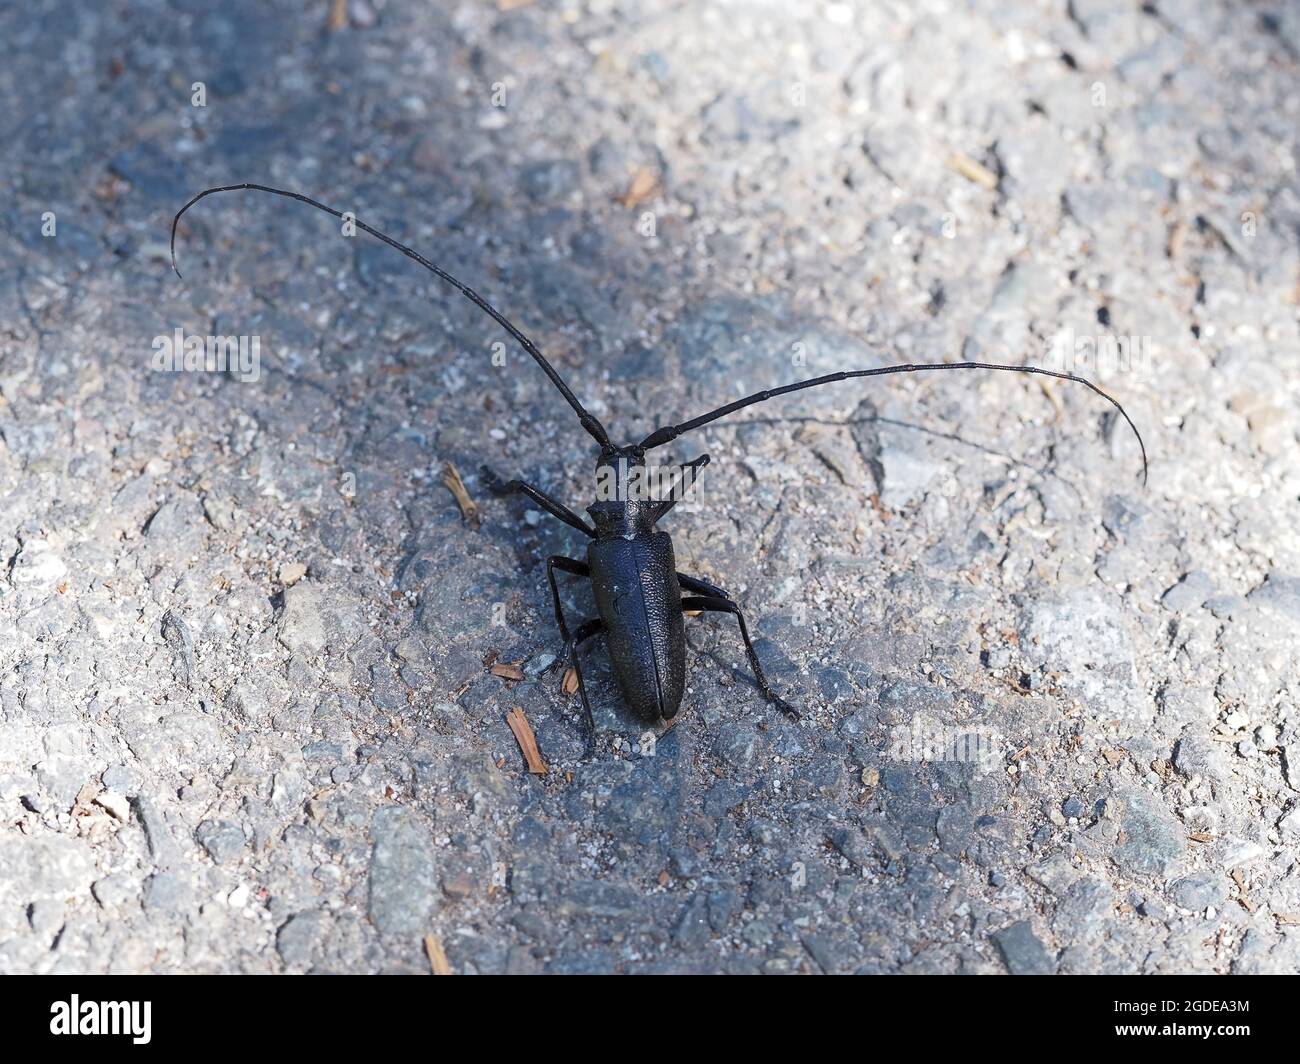 Monochamus scutellatus - escarabajo de sawyer de manchas blancas - de unos 5cm de longitud, sin incluir las antenas Foto de stock